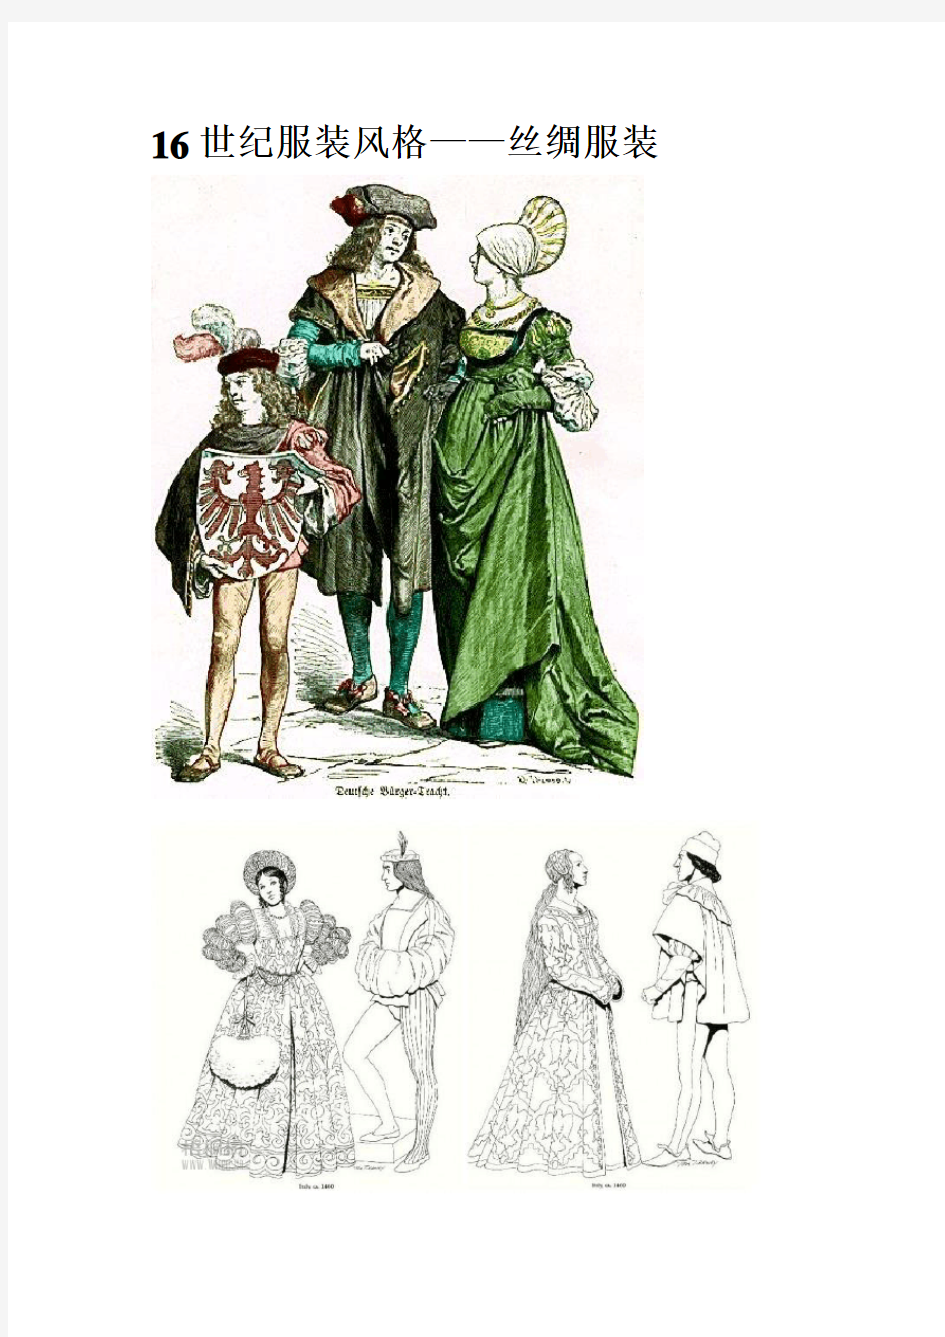 16、17、18、19世纪的服装风格